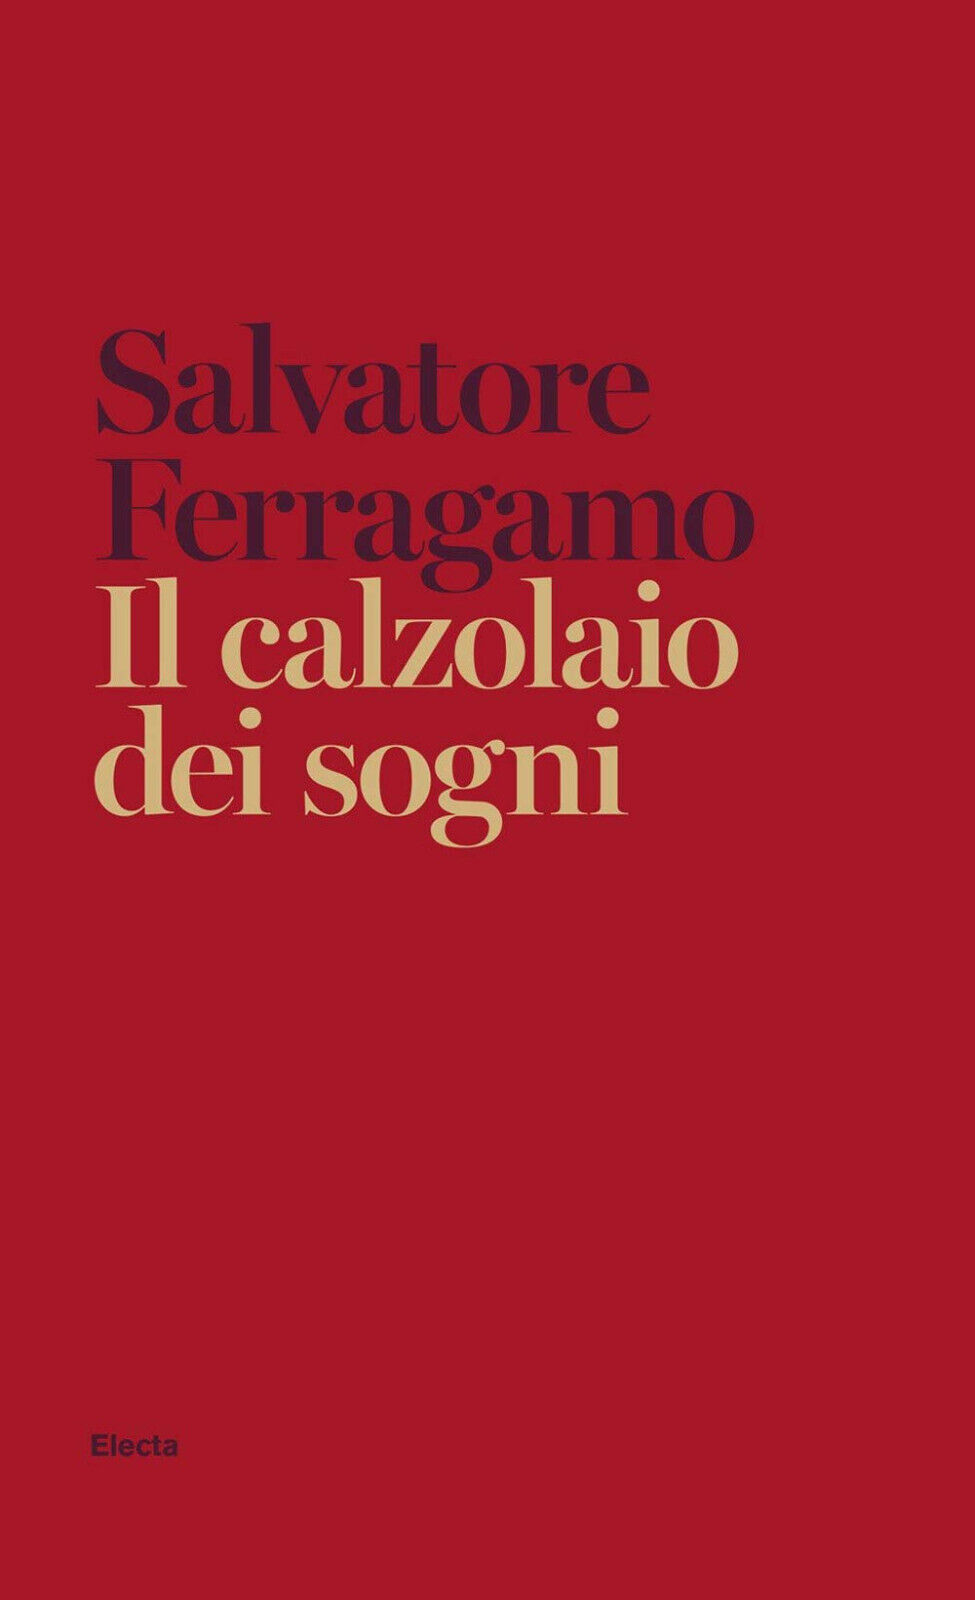 Il calzolaio dei sogni. Autobiografia - Salvatore Ferragamo - Electa, 2020